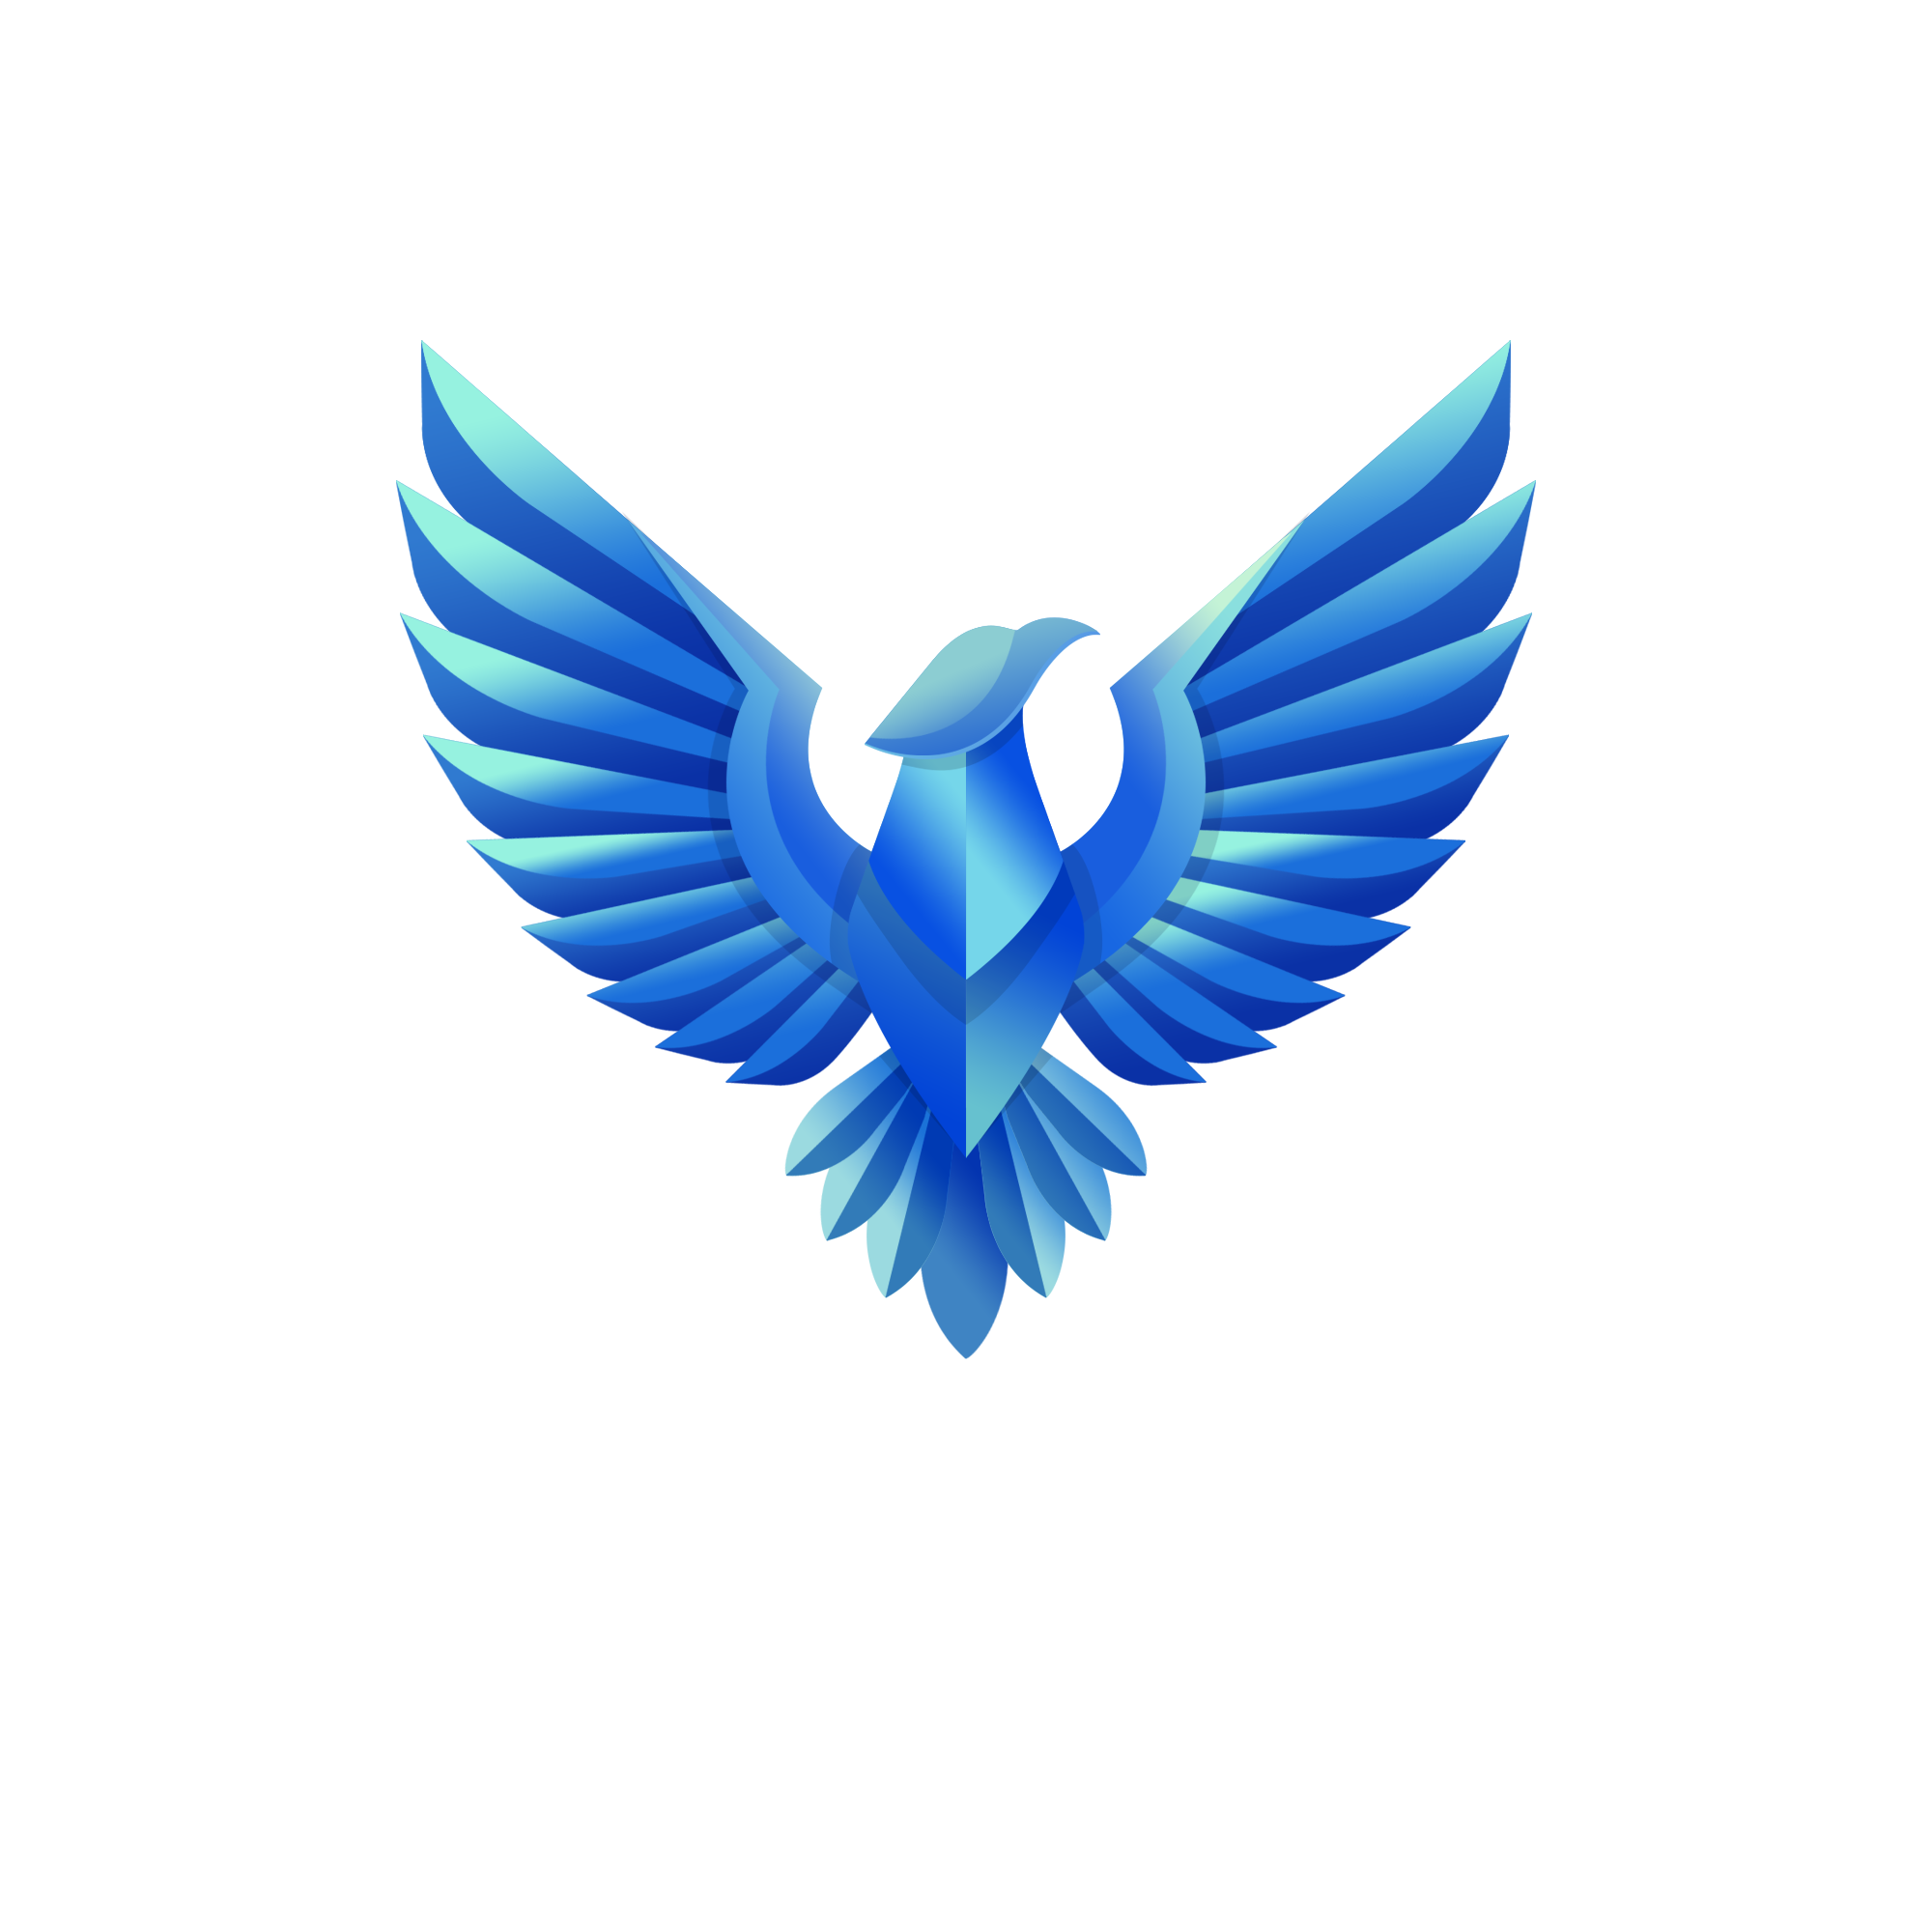 Ciel étoilé voiture - Wrapping design 44